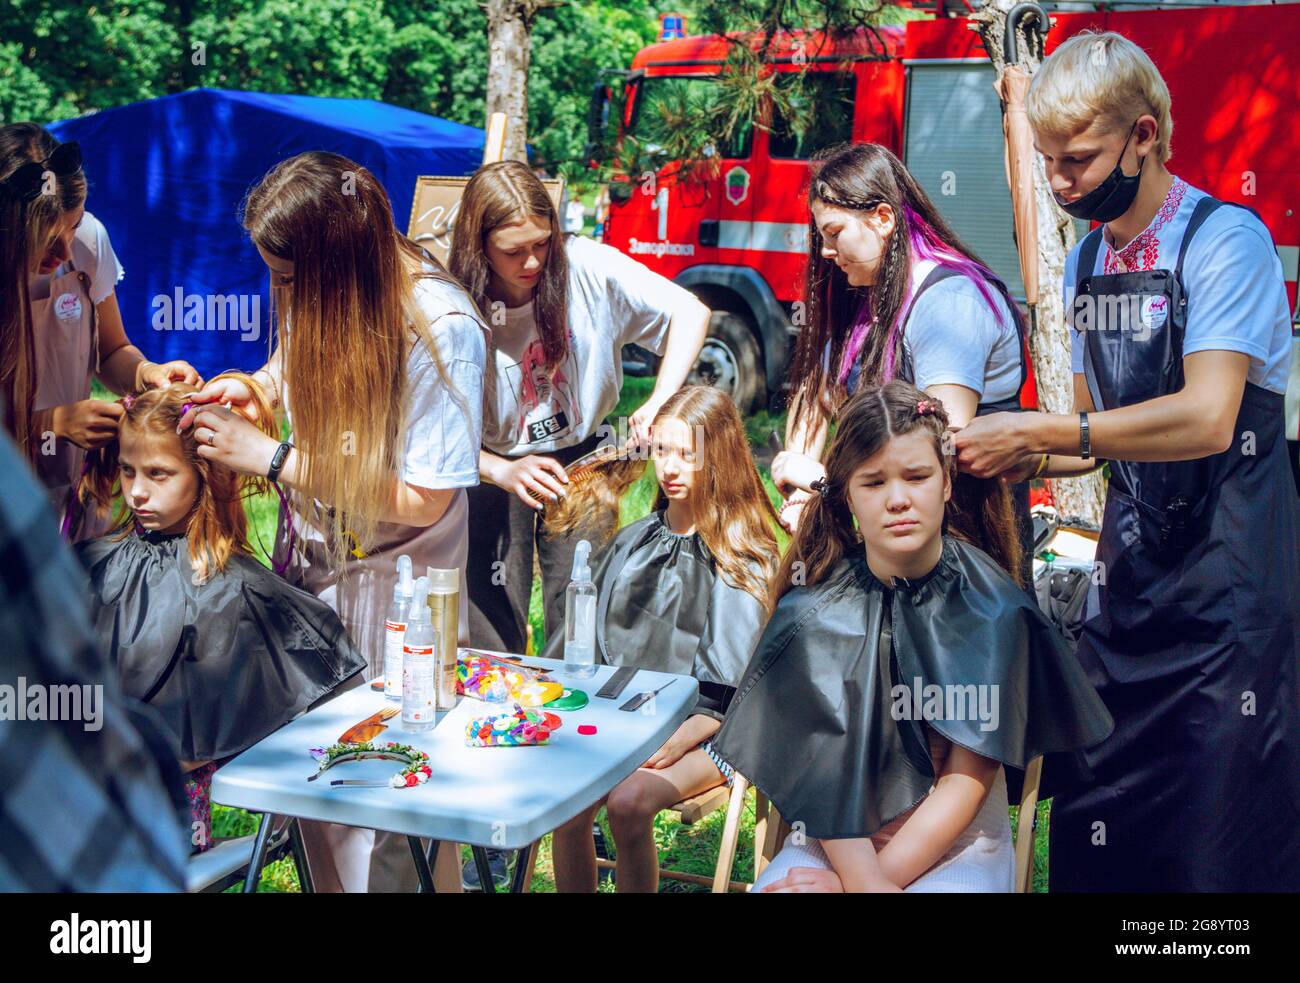 Zaporizhia, Ukraine- 19. Juni 2021: Charity Family Festival: Jungen und Mädchen nehmen an einem Outdoor-Friseurworkshop Teil. Junge Friseure bei wor Stockfoto